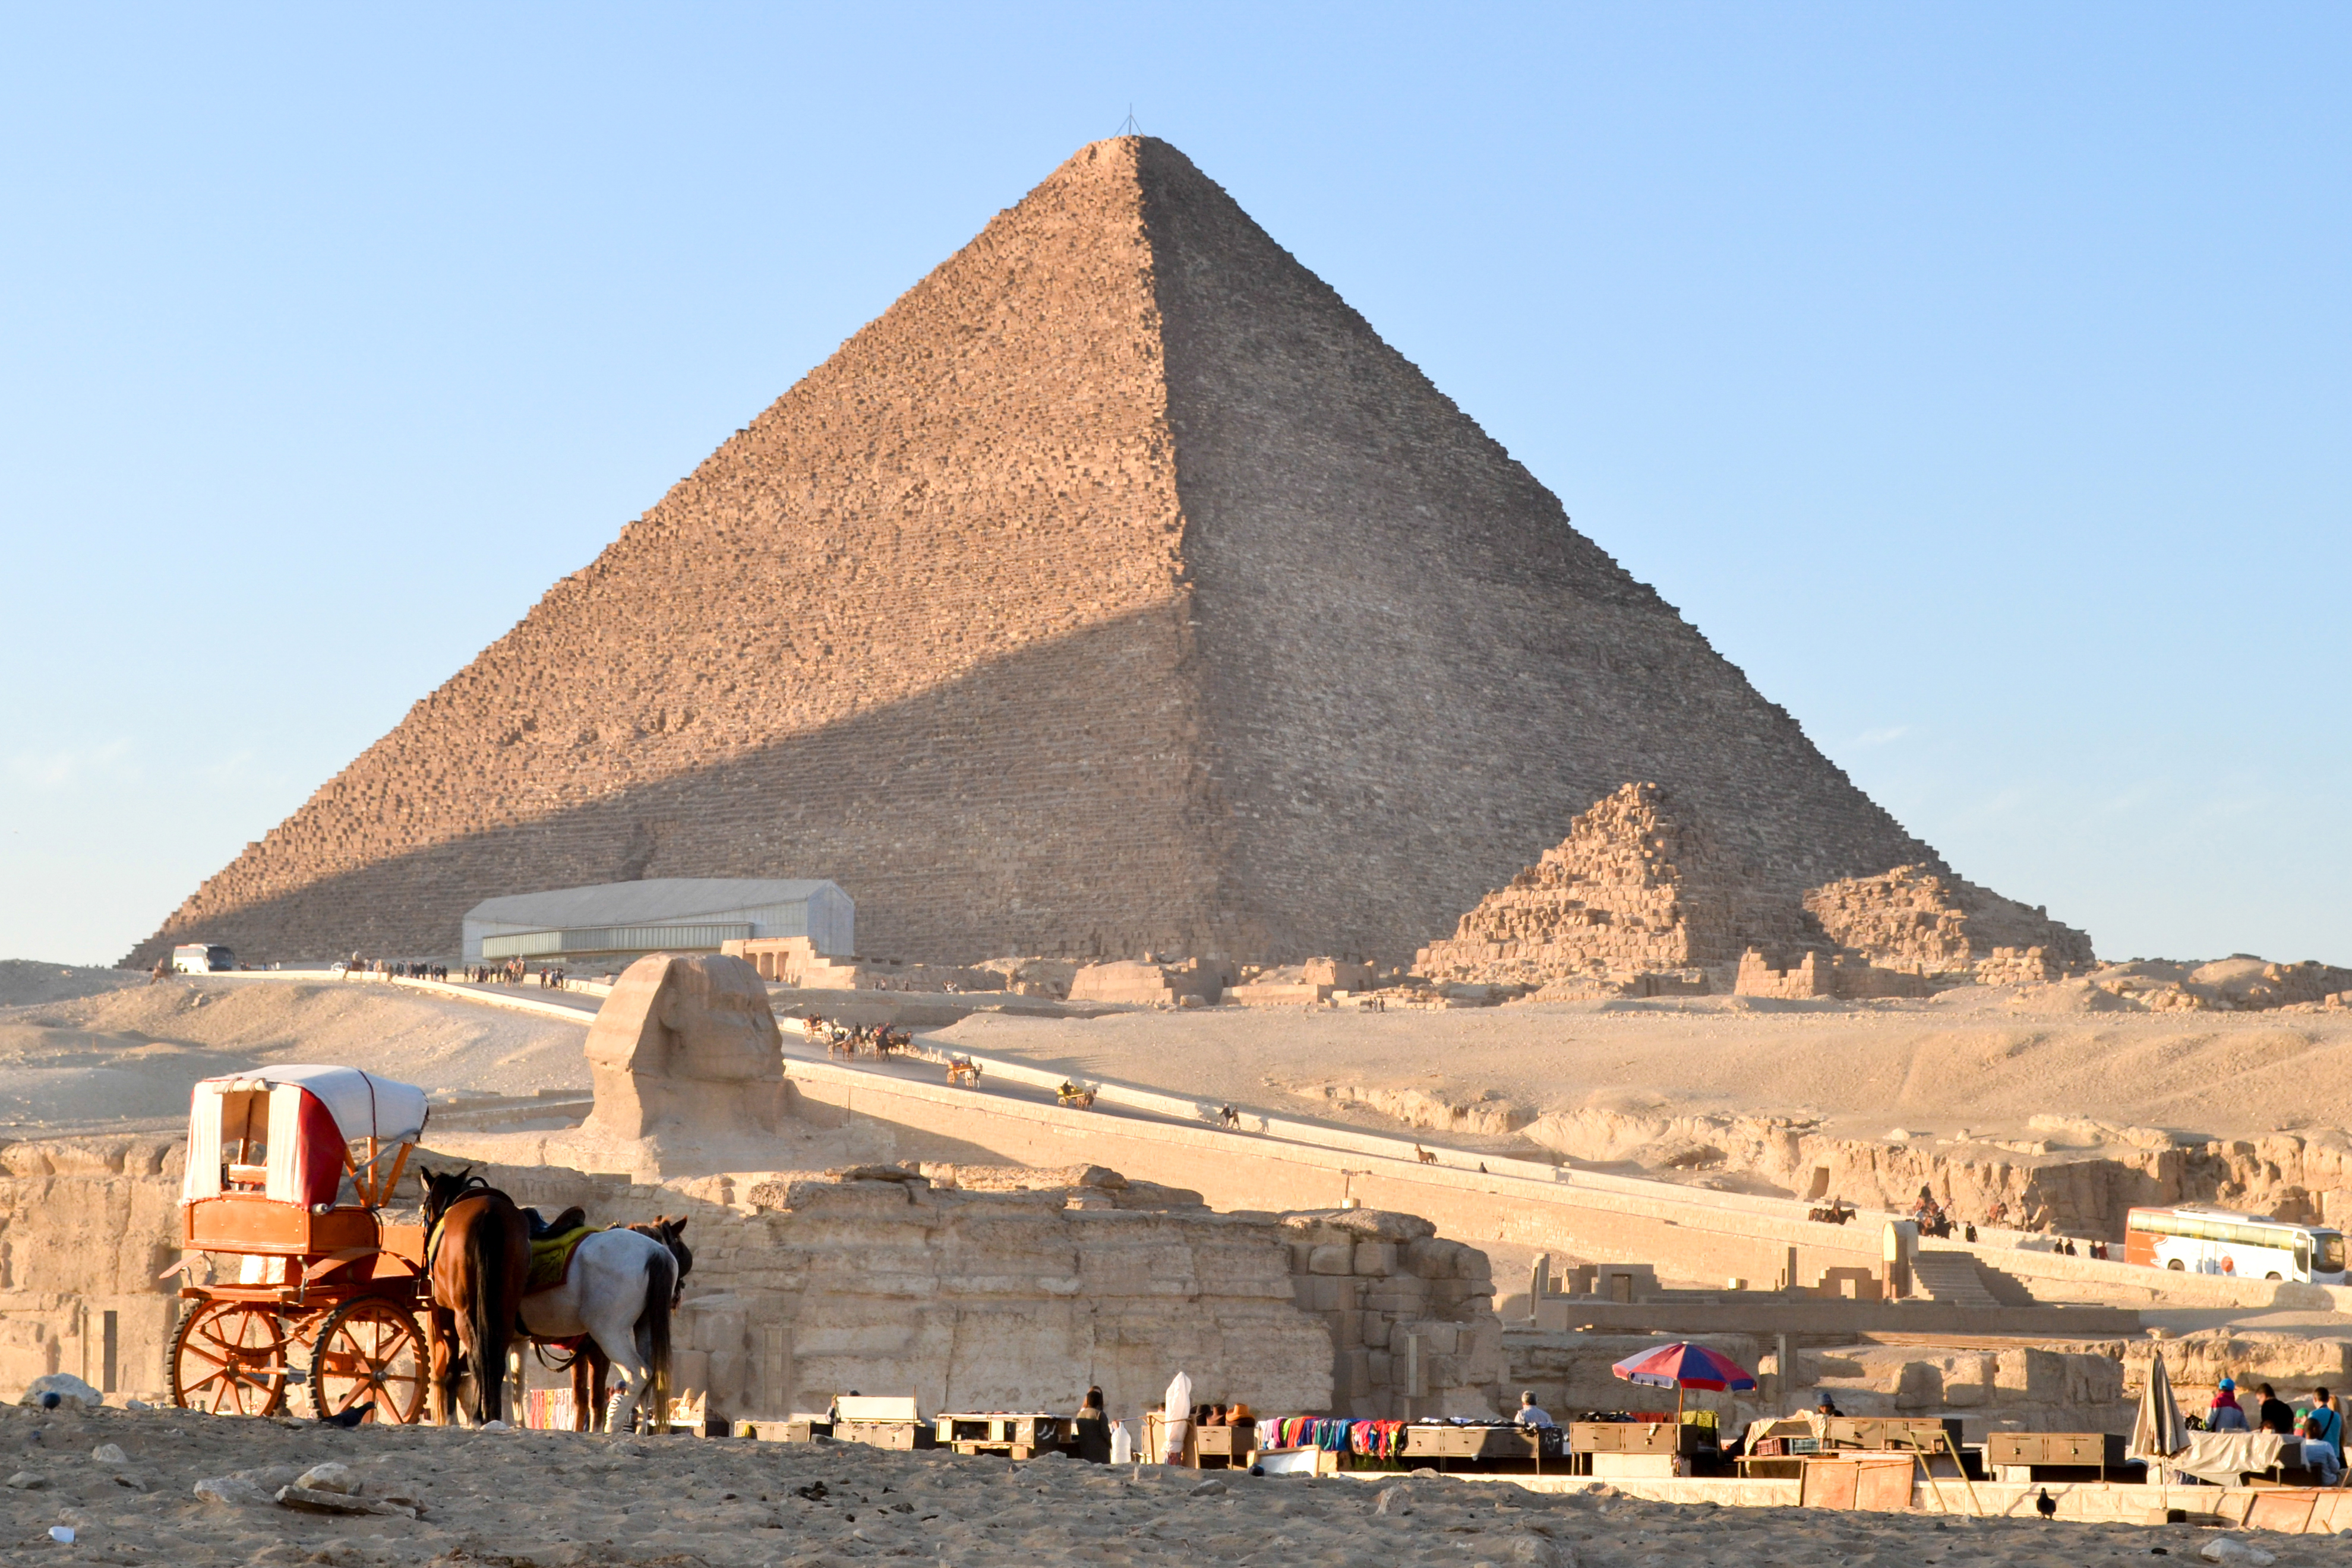 como-construyeron-piramides-egipto-secreto-descubrimiento